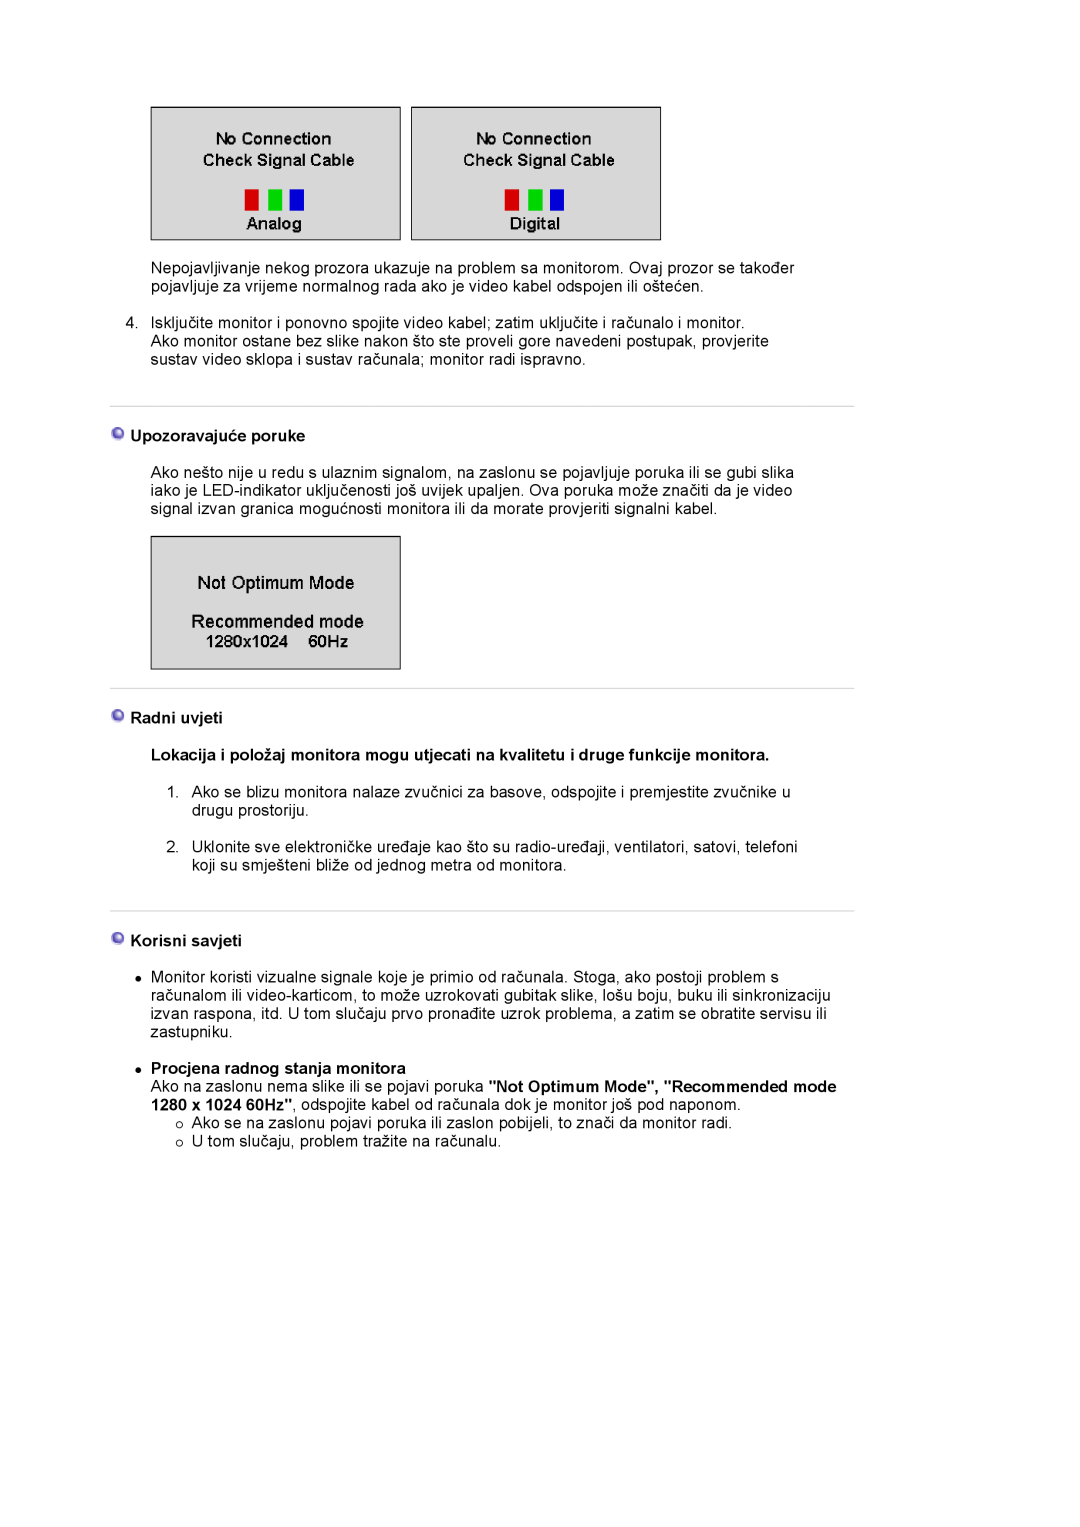 Samsung LS19HJDQHV/EDC manual Upozoravajuće poruke, Radni uvjeti, Korisni savjeti, z Procjena radnog stanja monitora 